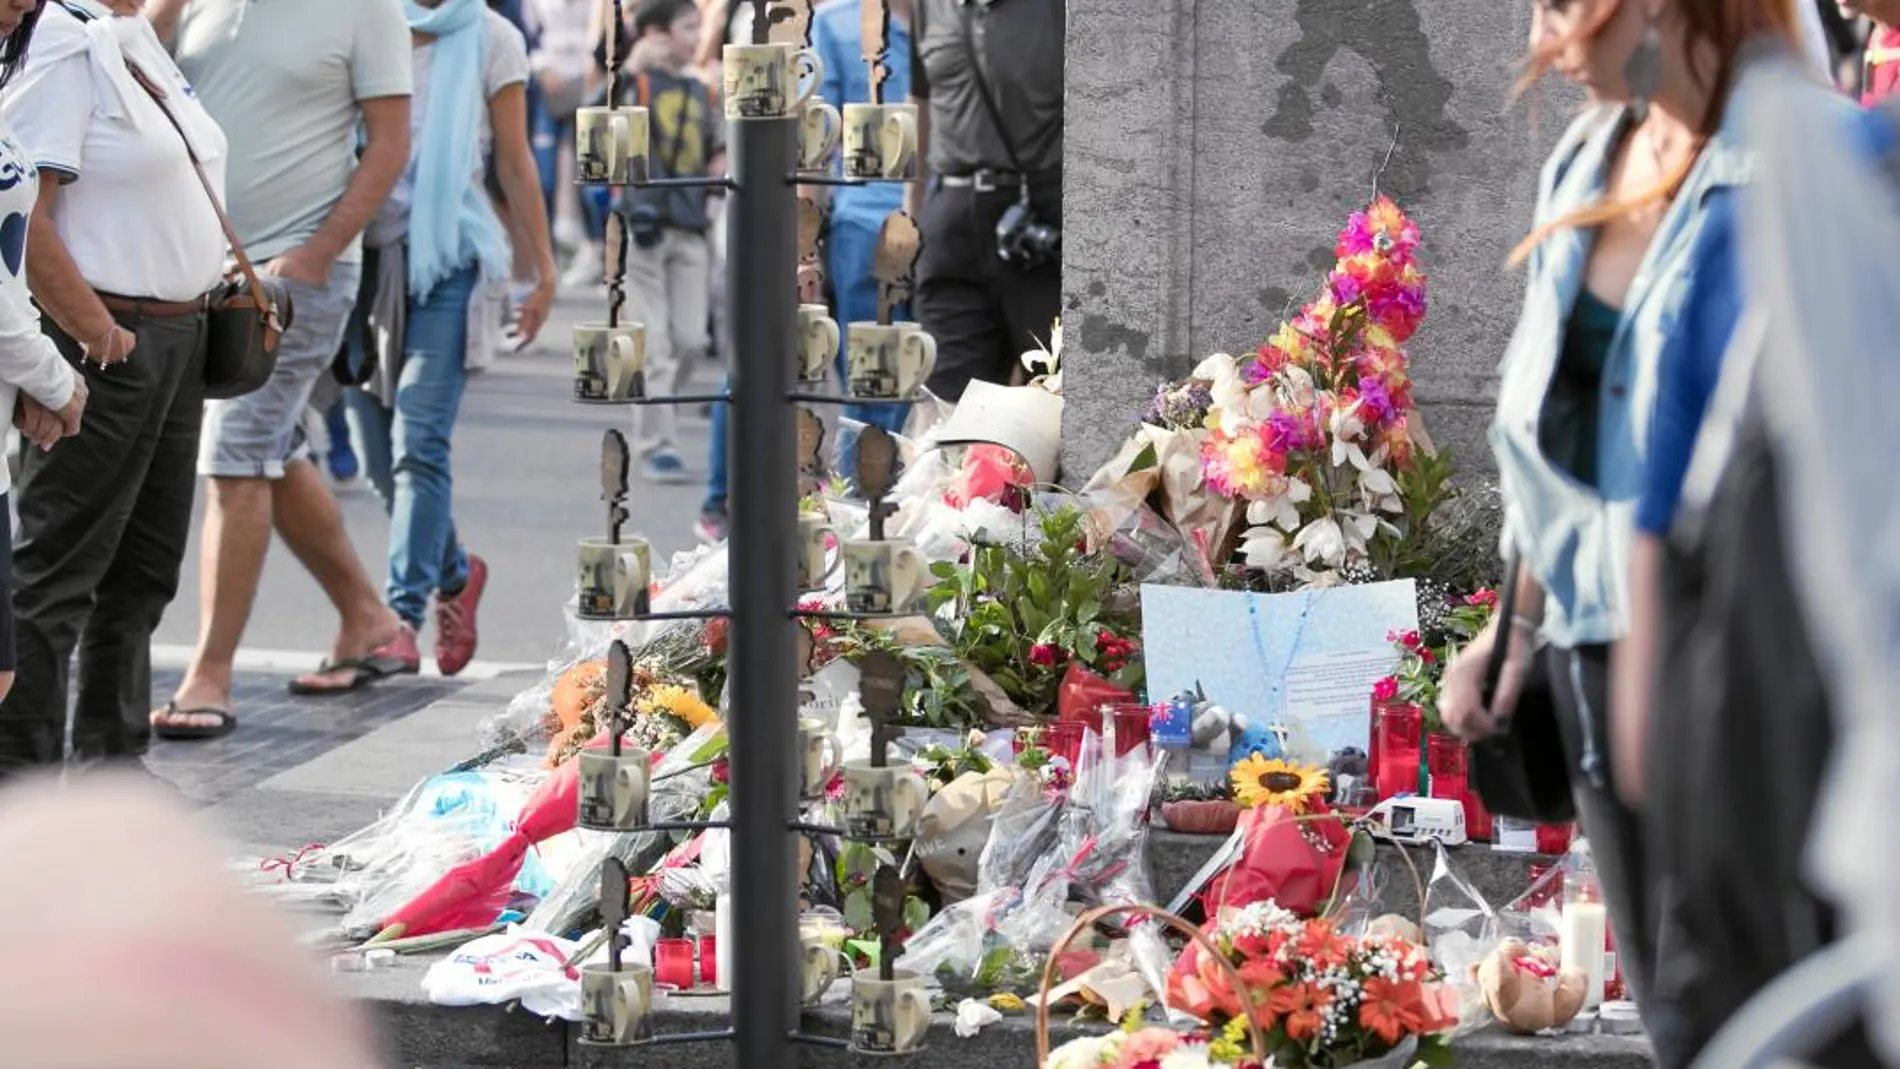 Fue especialmente emotivo el aspecto de La Rambla de Barcelona durante los días posteriores al atentado, con centenares de velas y flores depositadas en la calle